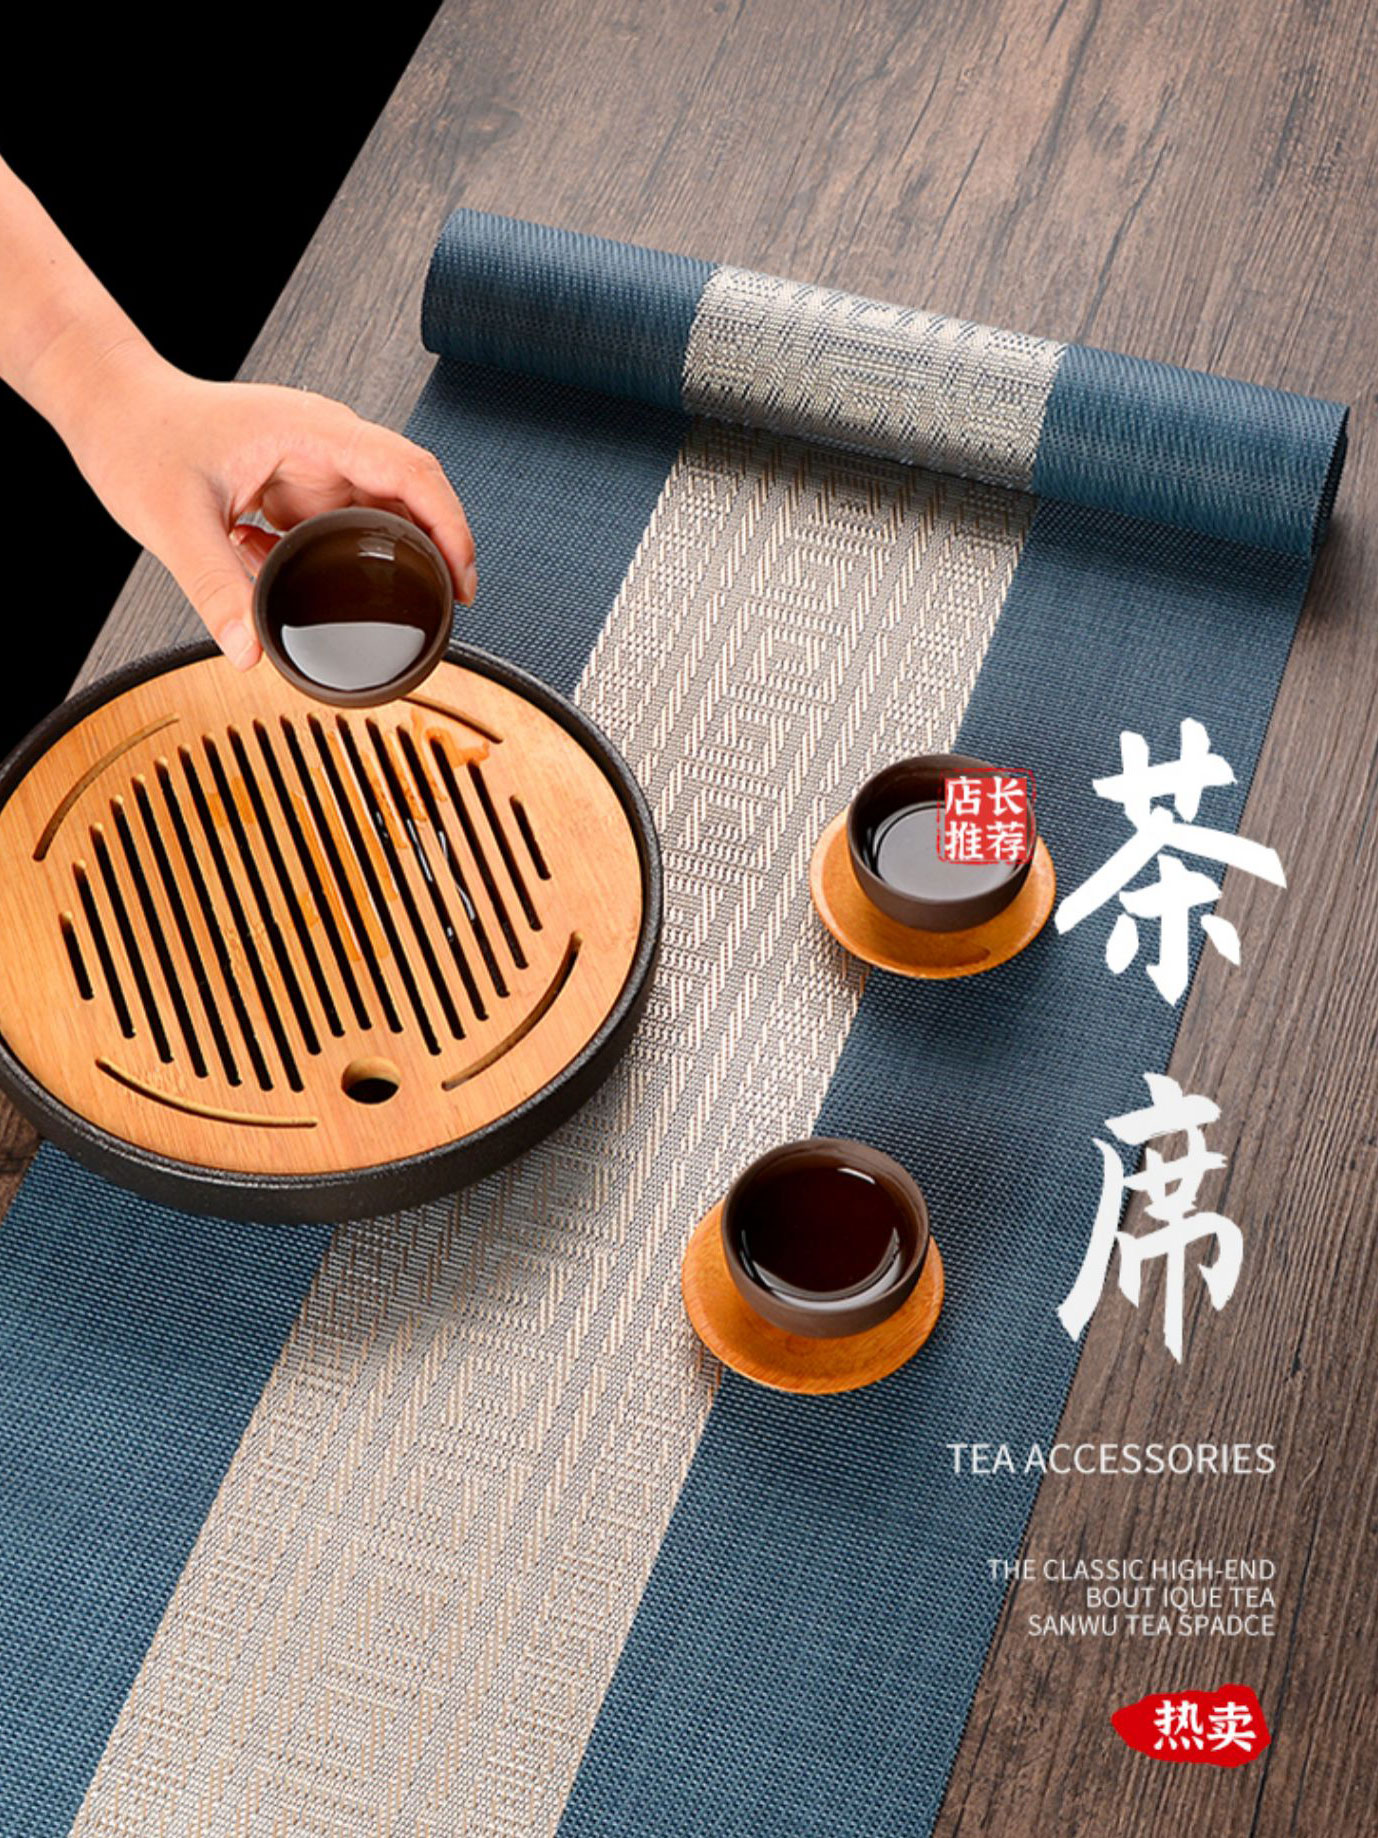 新中式桌旗 禪意茶桌茶旗茶臺茶布墊 防水防油耐磨 適合各種長條桌 多款尺寸顏色可選